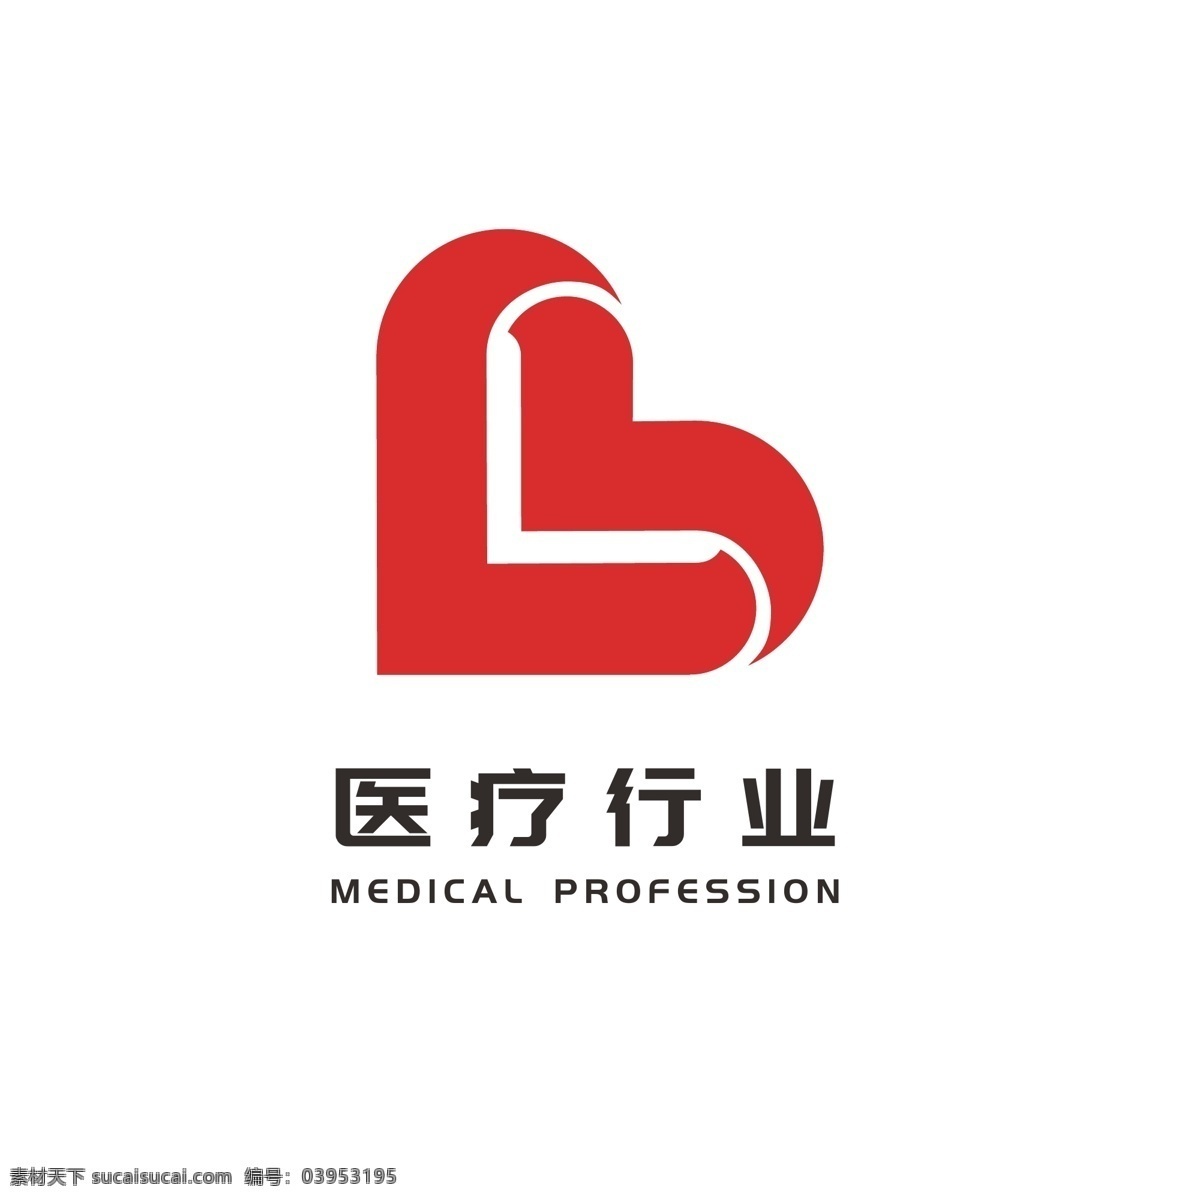 医疗 行业 卫生保健 医药 logo 爱心 关爱 标志 爱心logo 简约logo 通用logo 大众logo 医疗卫生